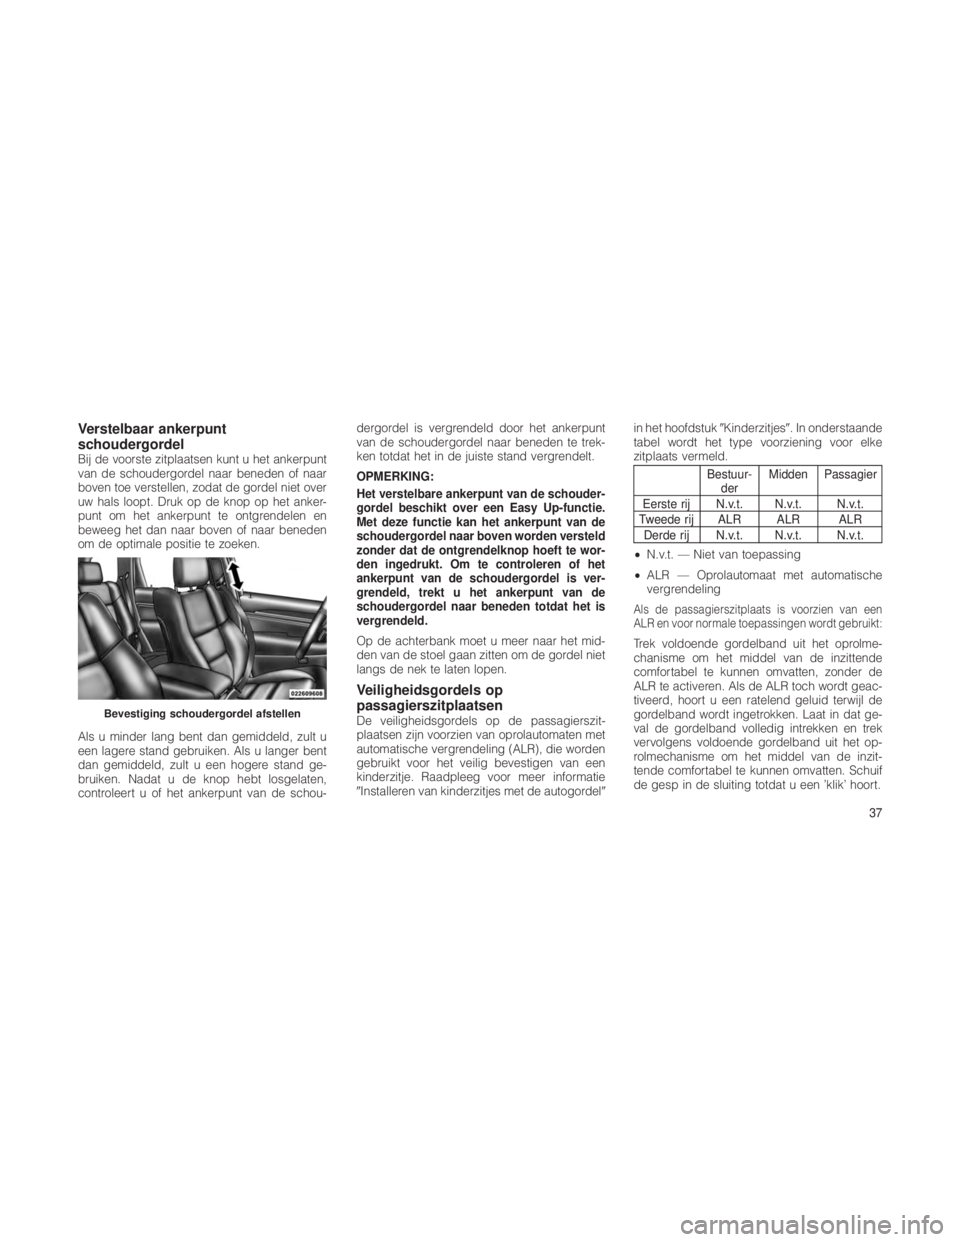 JEEP GRAND CHEROKEE 2012  Instructieboek (in Dutch) Verstelbaar ankerpunt
schoudergordel
Bij de voorste zitplaatsen kunt u het ankerpunt
van de schoudergordel naar beneden of naar
boven toe verstellen, zodat de gordel niet over
uw hals loopt. Druk op d